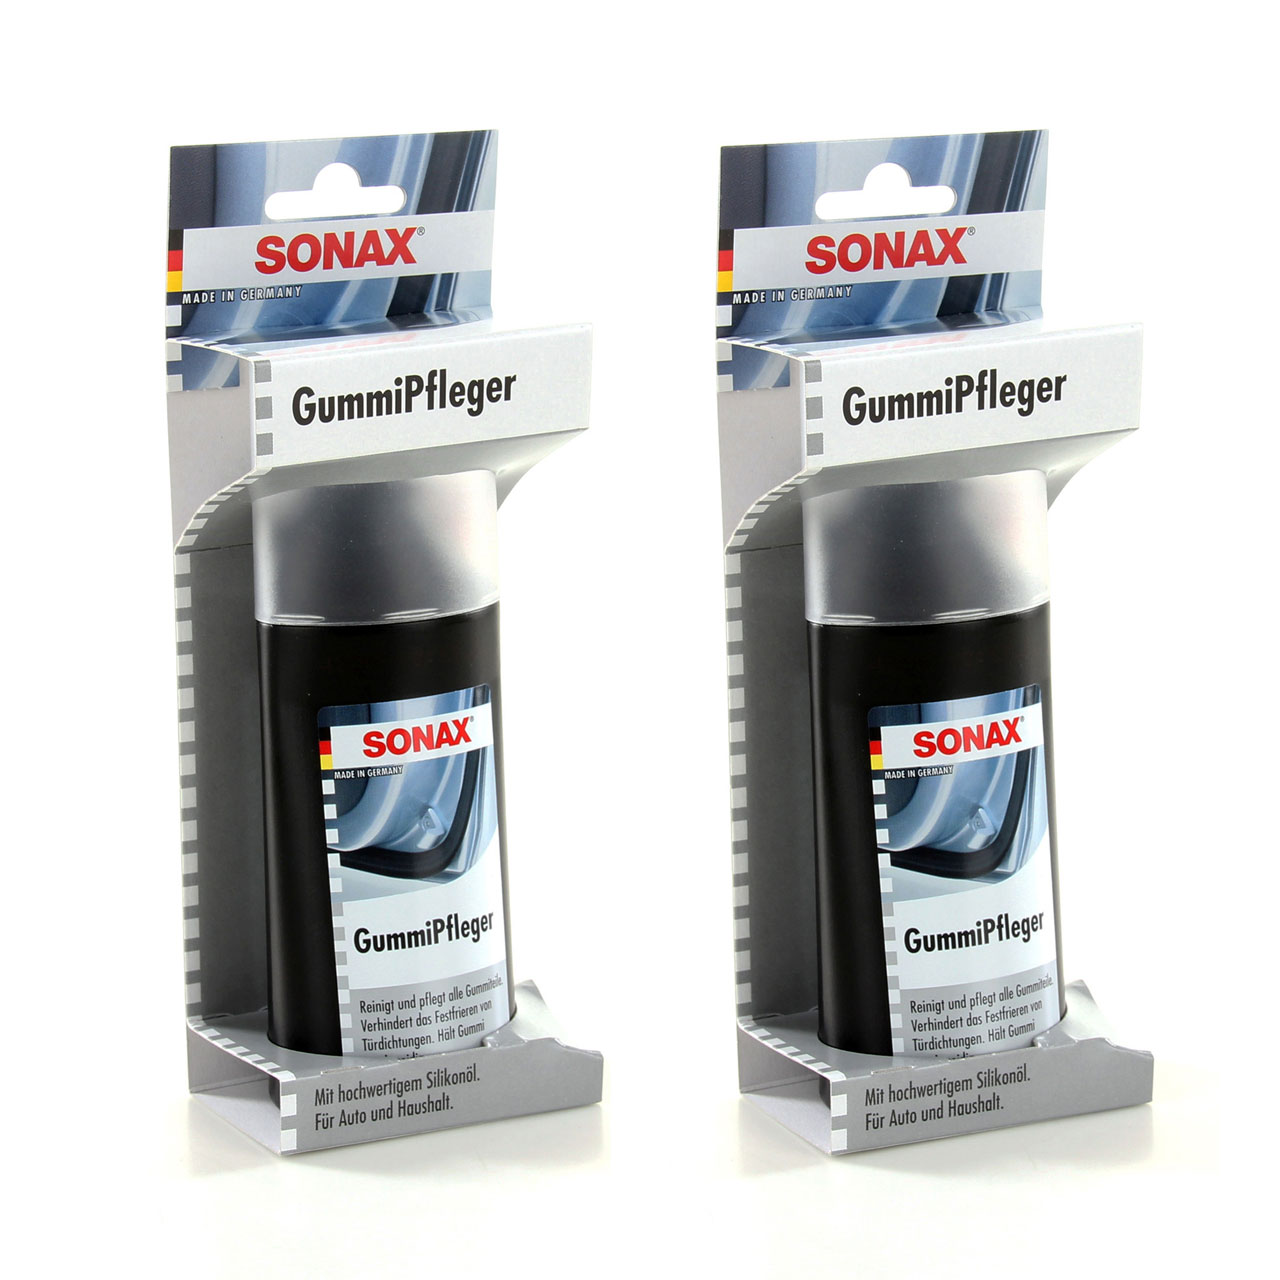 2x 100ml SONAX 340000 GummiPfleger mit hochwertigem Silikonöl für Auto+Haushalt